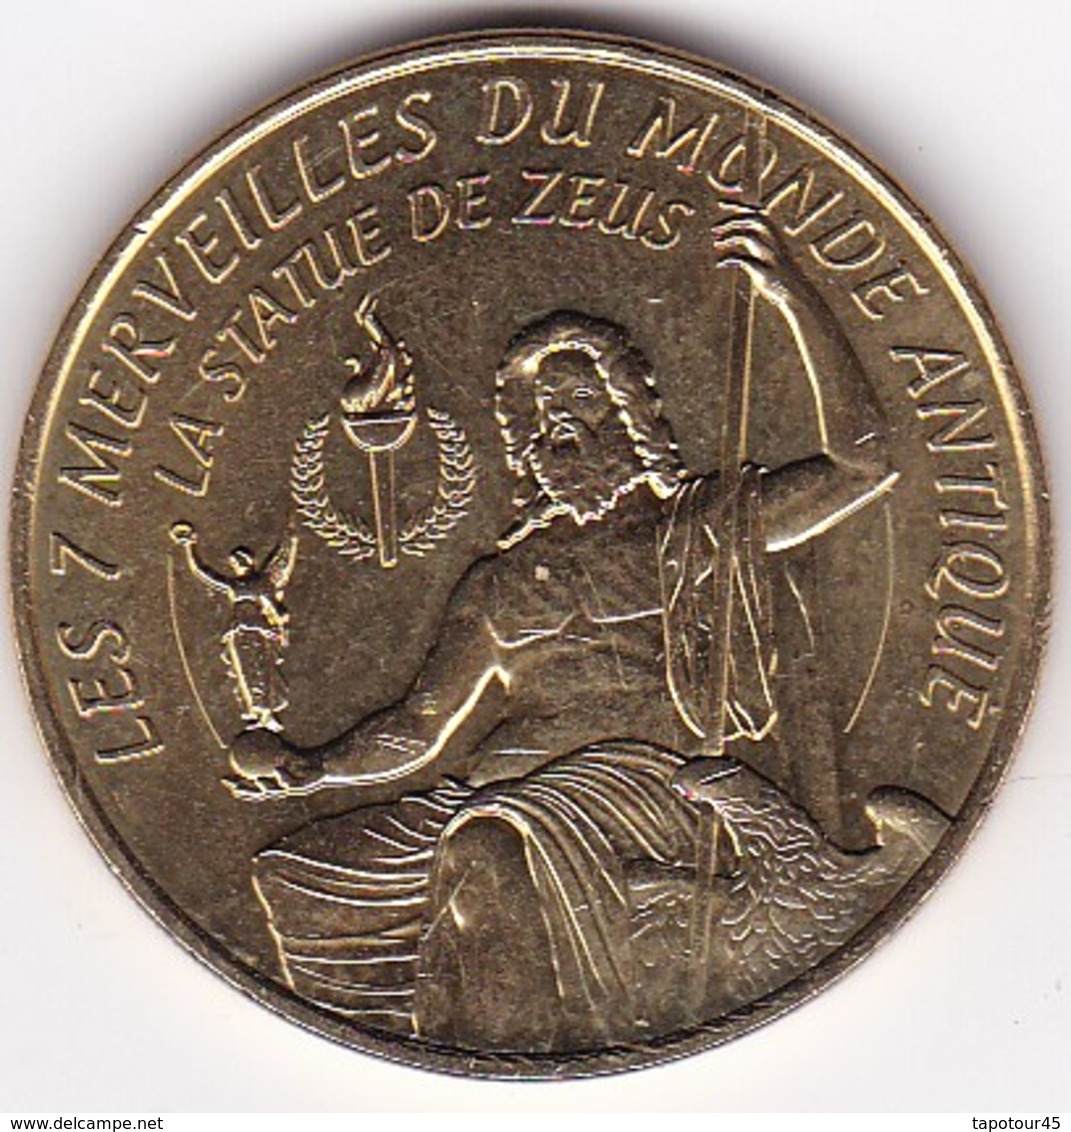 PL 2) 9 > Médaille Souvenir Ou Touristique > La Statue De Zeus > Dia. 34 Mm - 2014